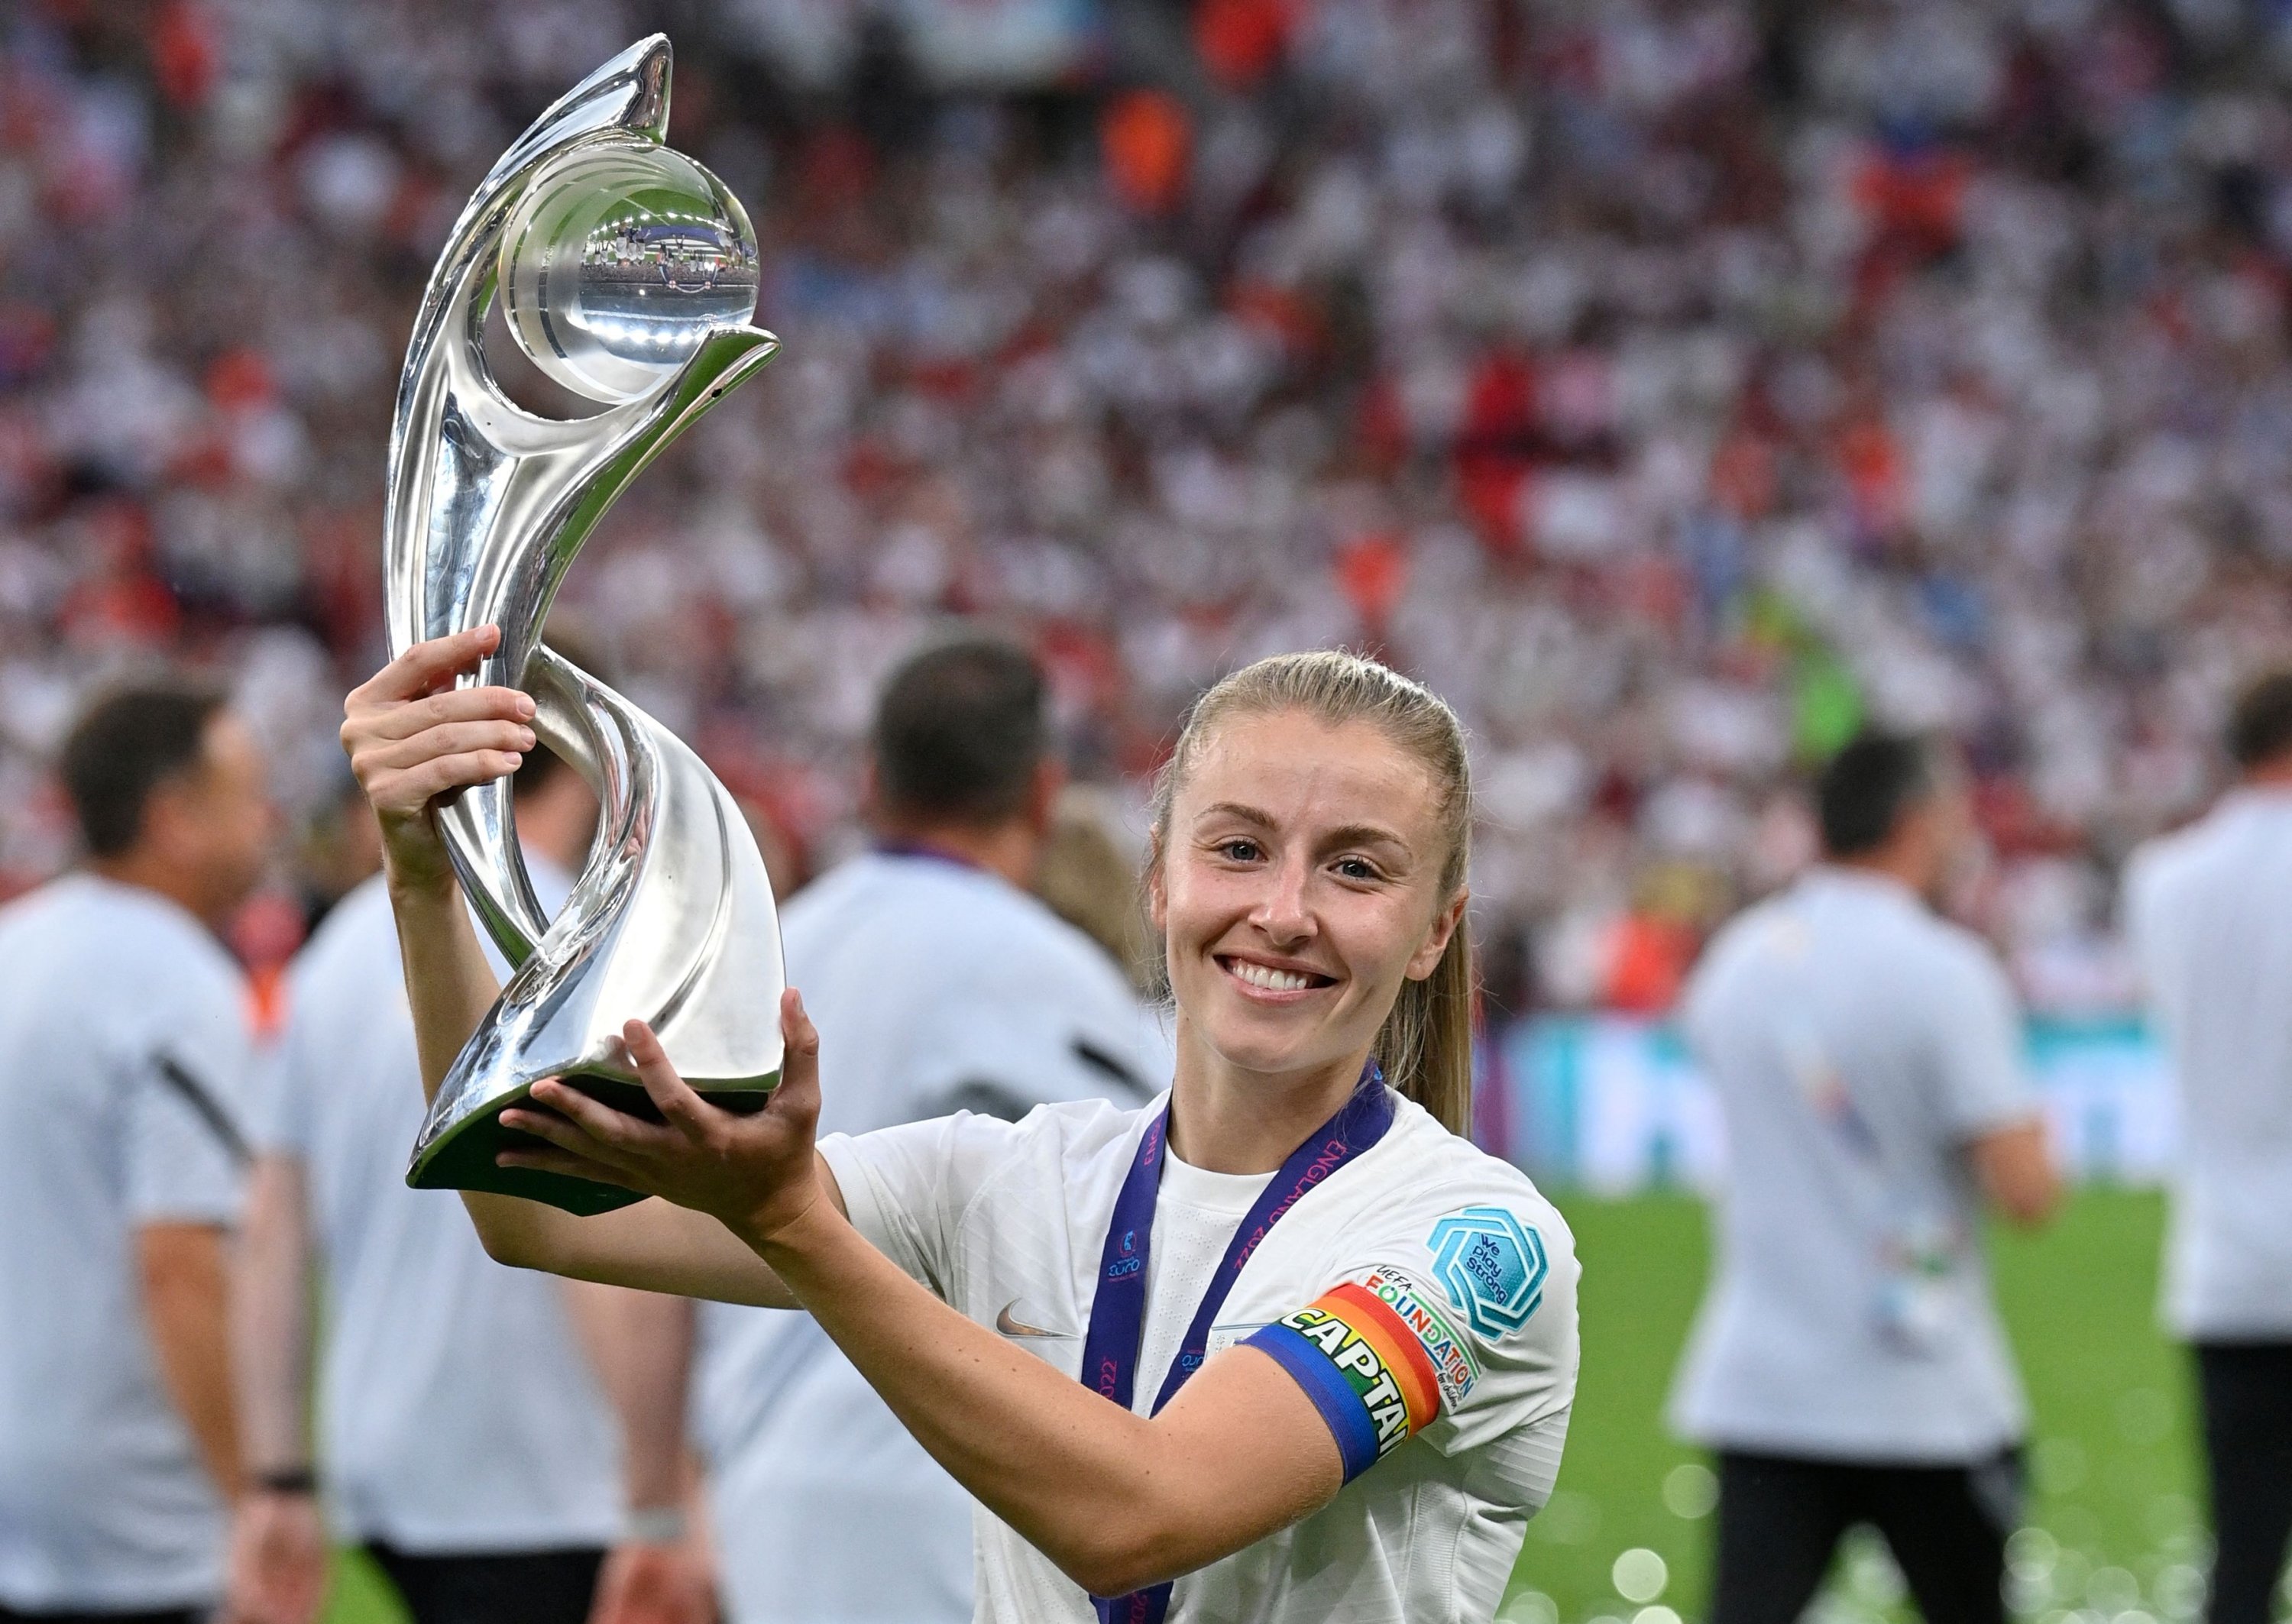 Gelandang Inggris Leah Williamson berpose dengan trofi saat para pemain Inggris merayakan kemenangan mereka dalam pertandingan sepak bola final UEFA Women's Euro 2022 antara Inggris dan Jerman di stadion Wembley, di London, Inggris, 31 Juli 2022. (Foto Reuters)